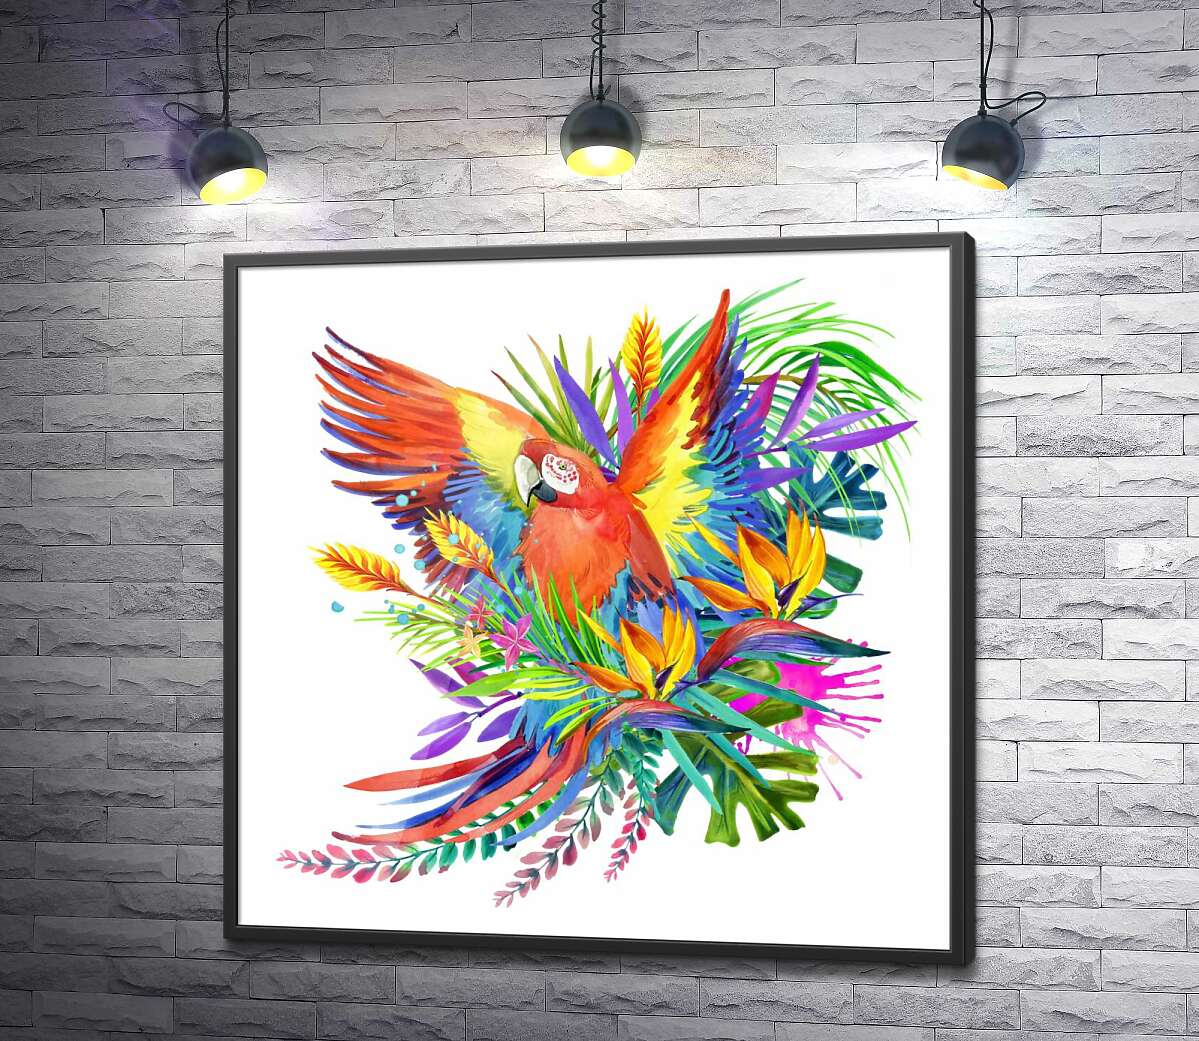 постер Попугай ара маскируется среди тропического разнообразия цветов